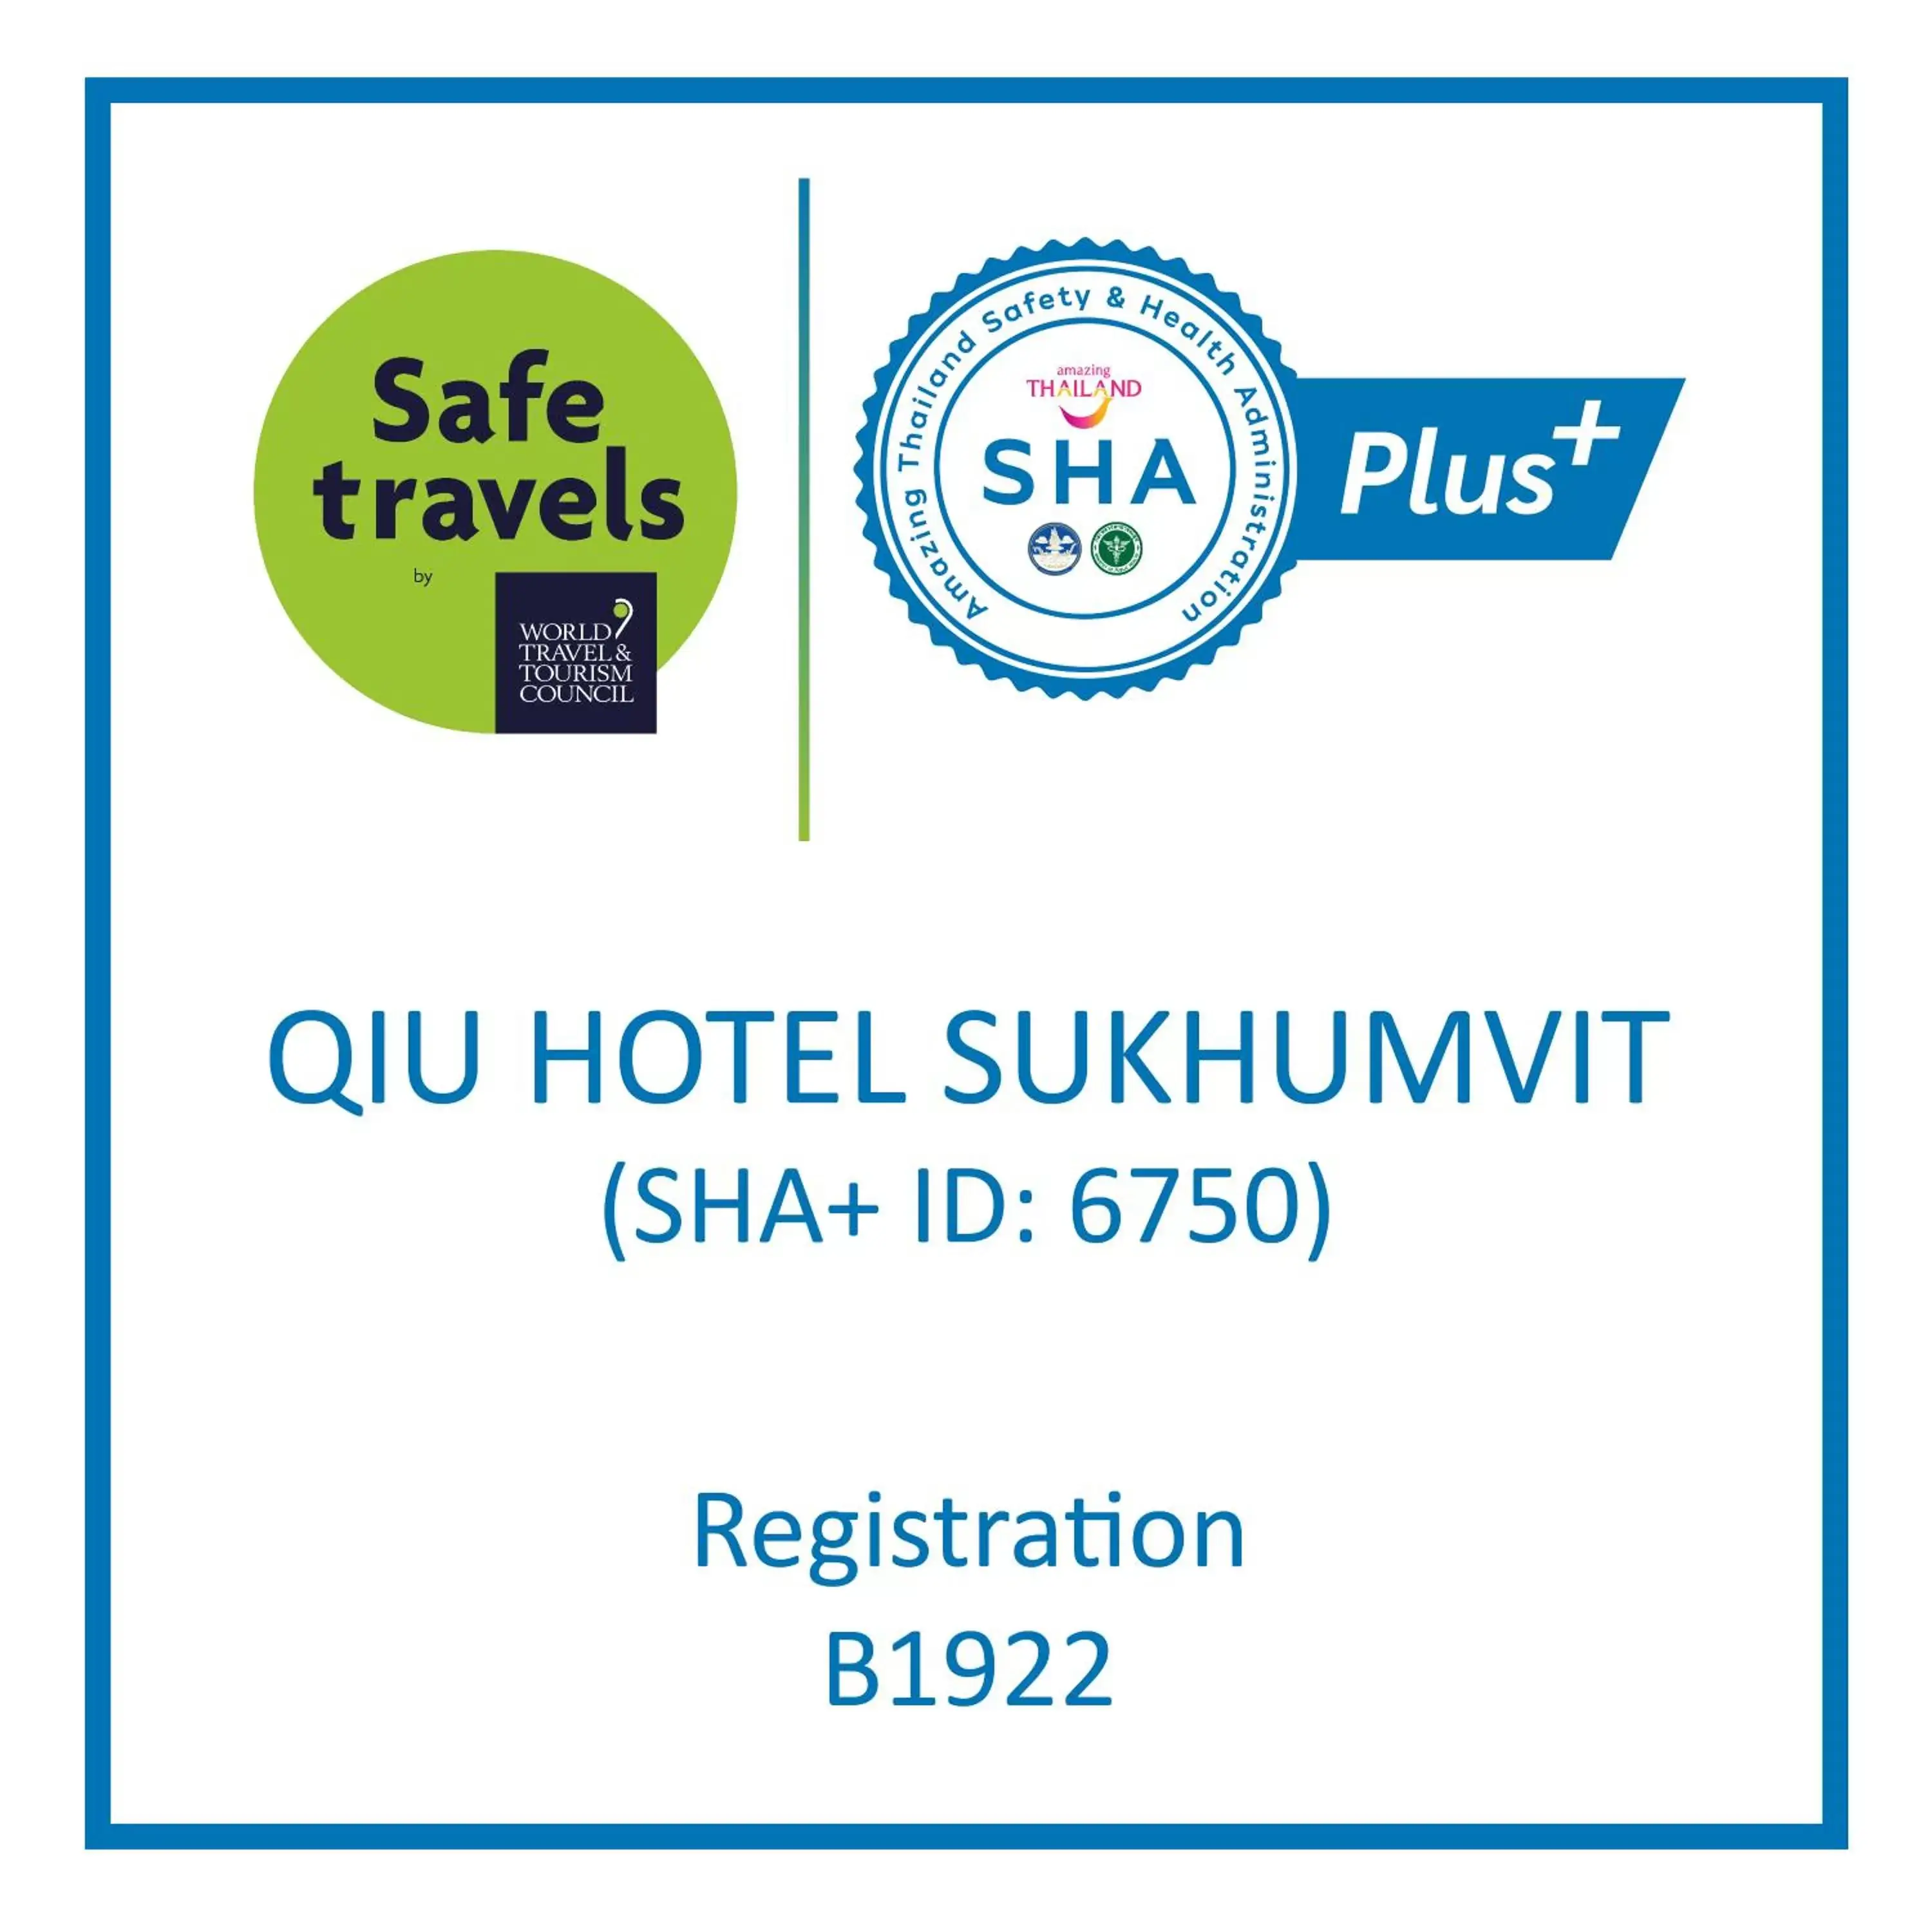 Logo/Certificate/Sign in Qiu Hotel Sukhumvit SHA Plus